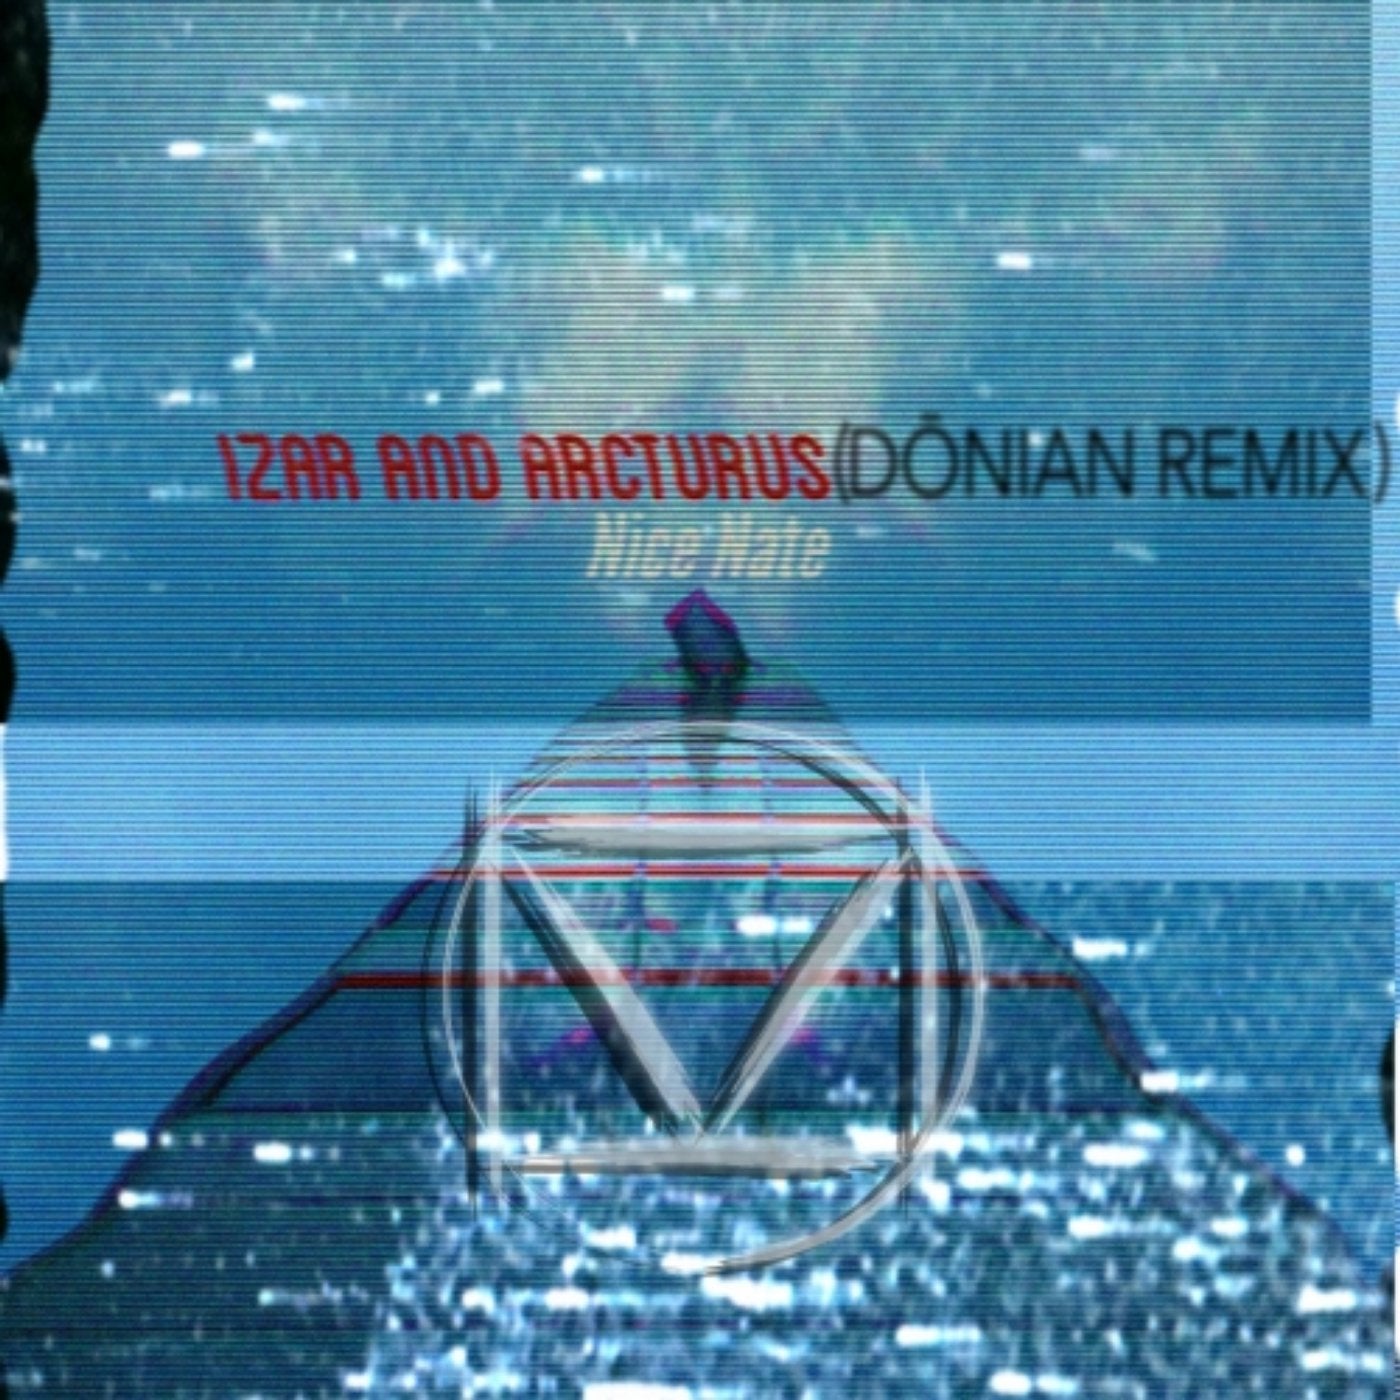 Izar and Arcturus (Donian Remix)